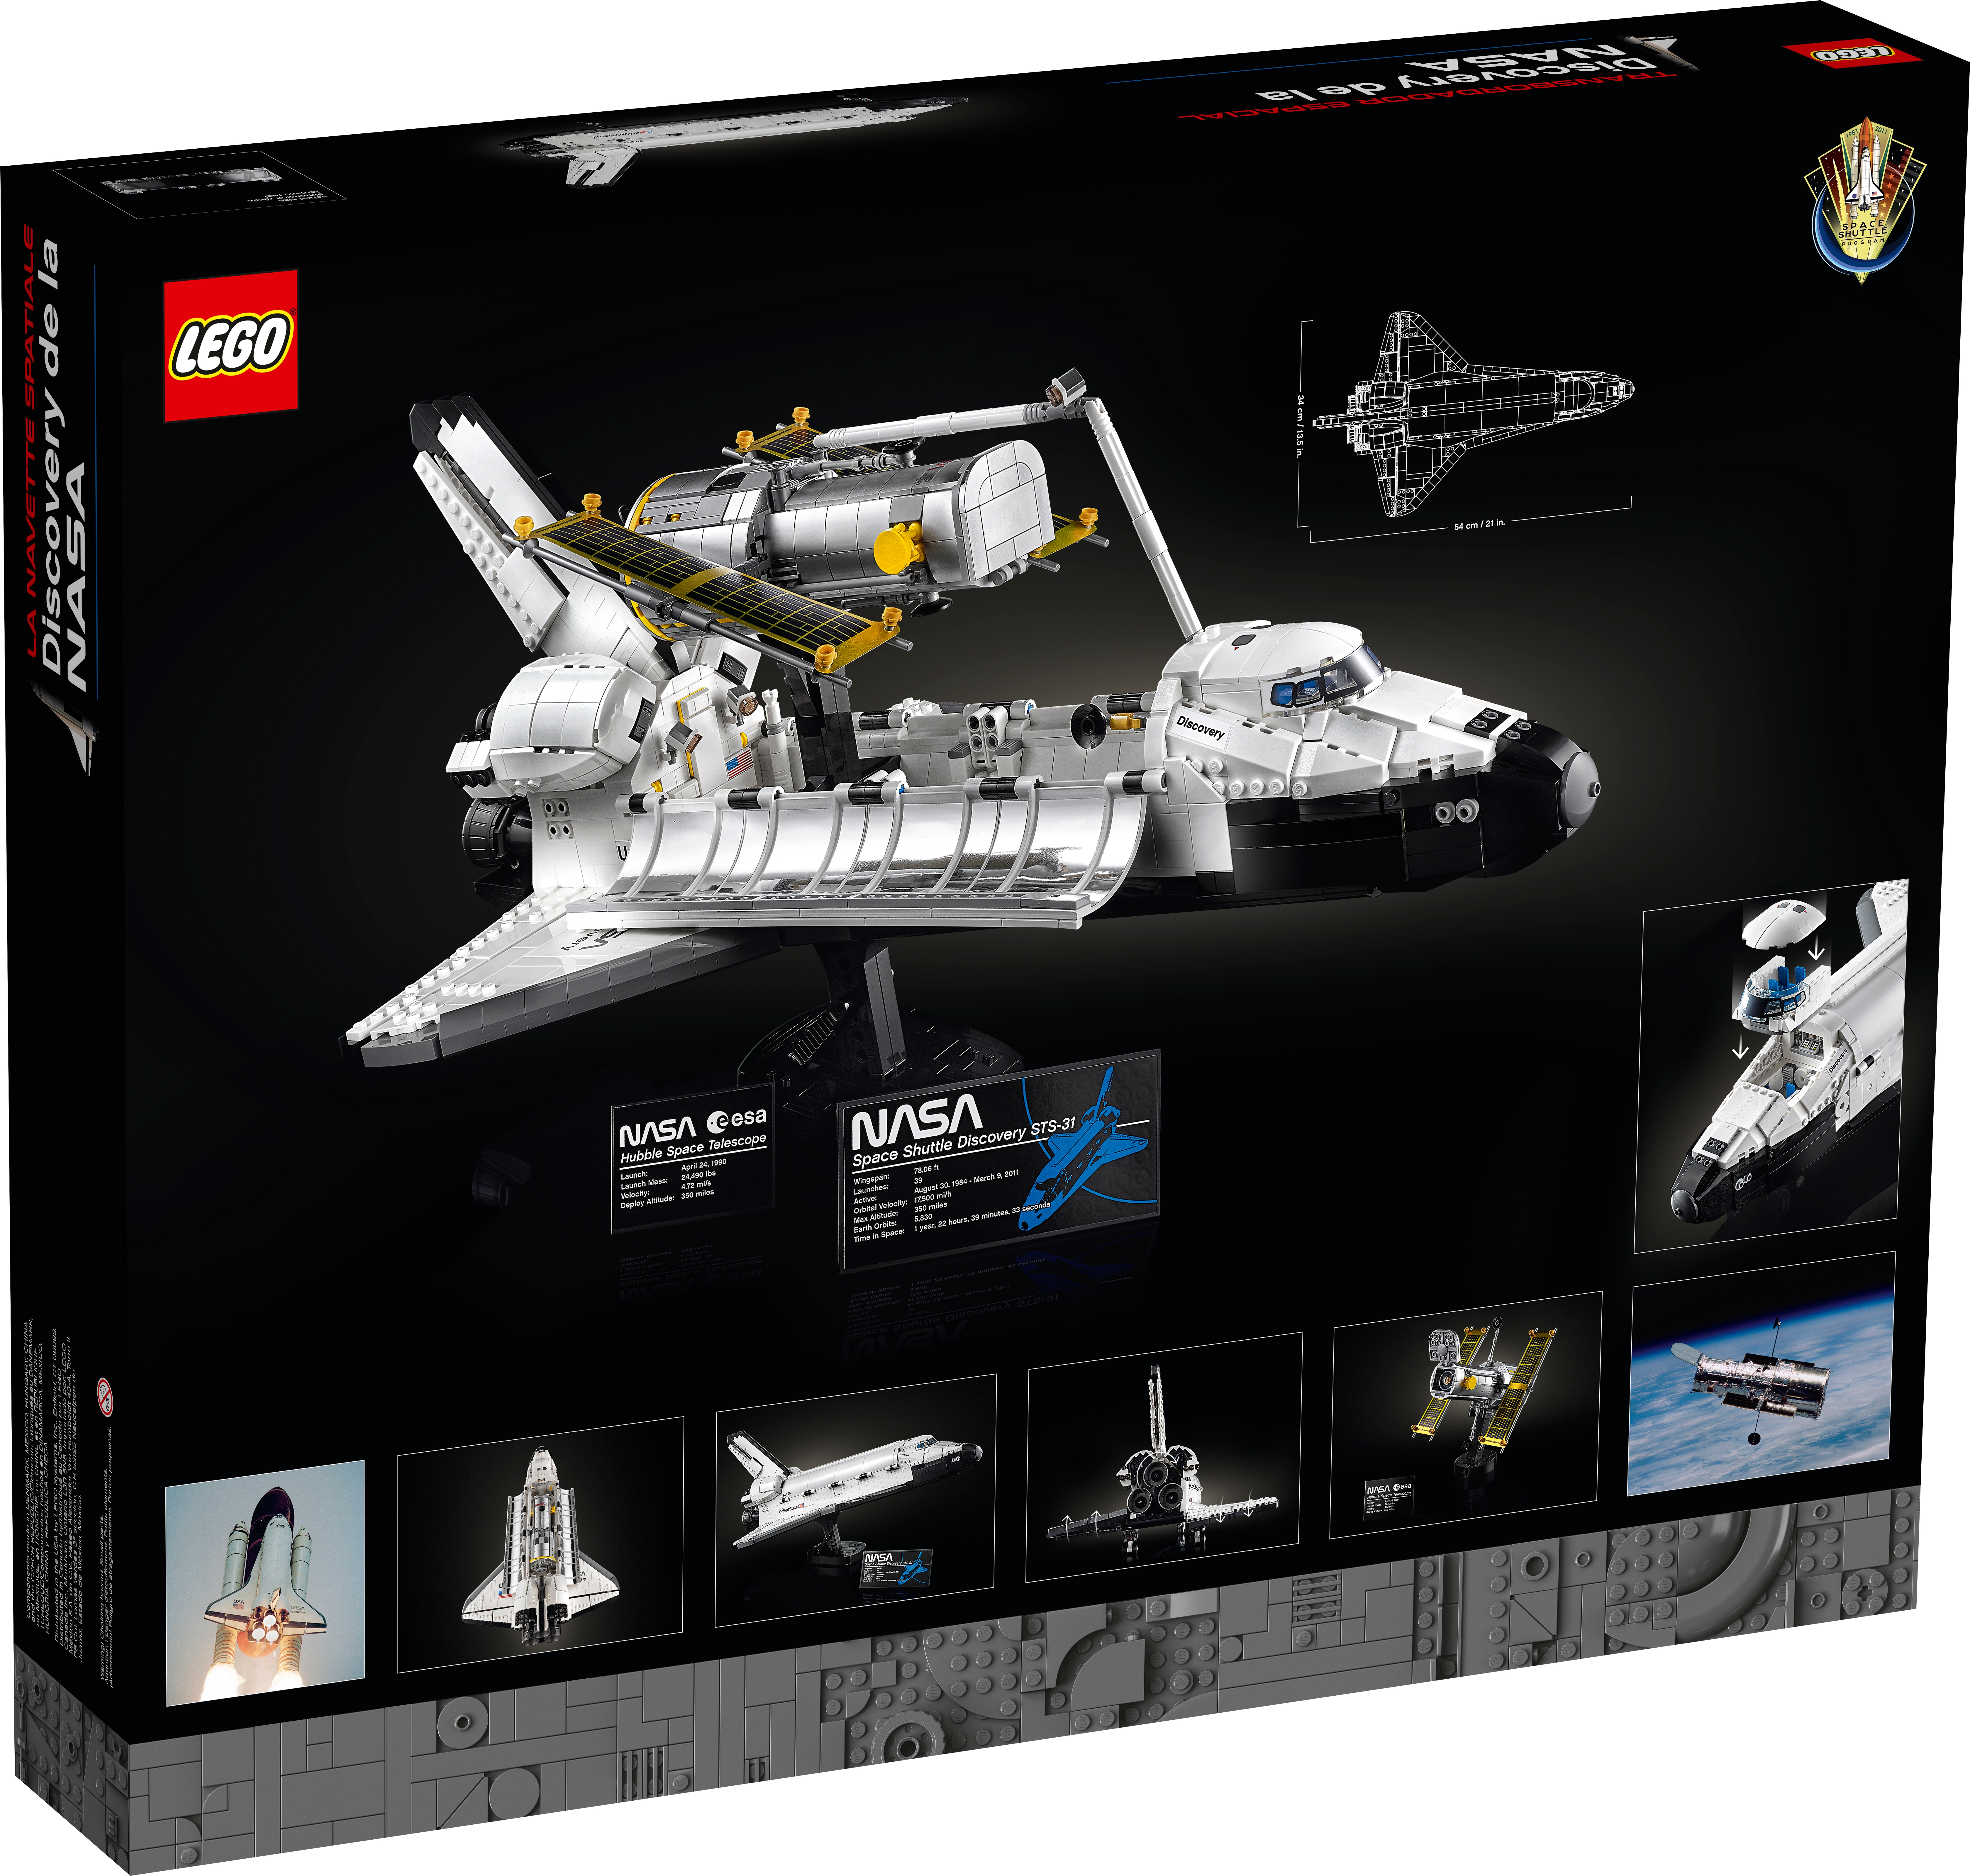 Supporto a Muro Lego NASA Space Shuttle Discovery 10283 FLAT Wallmount 